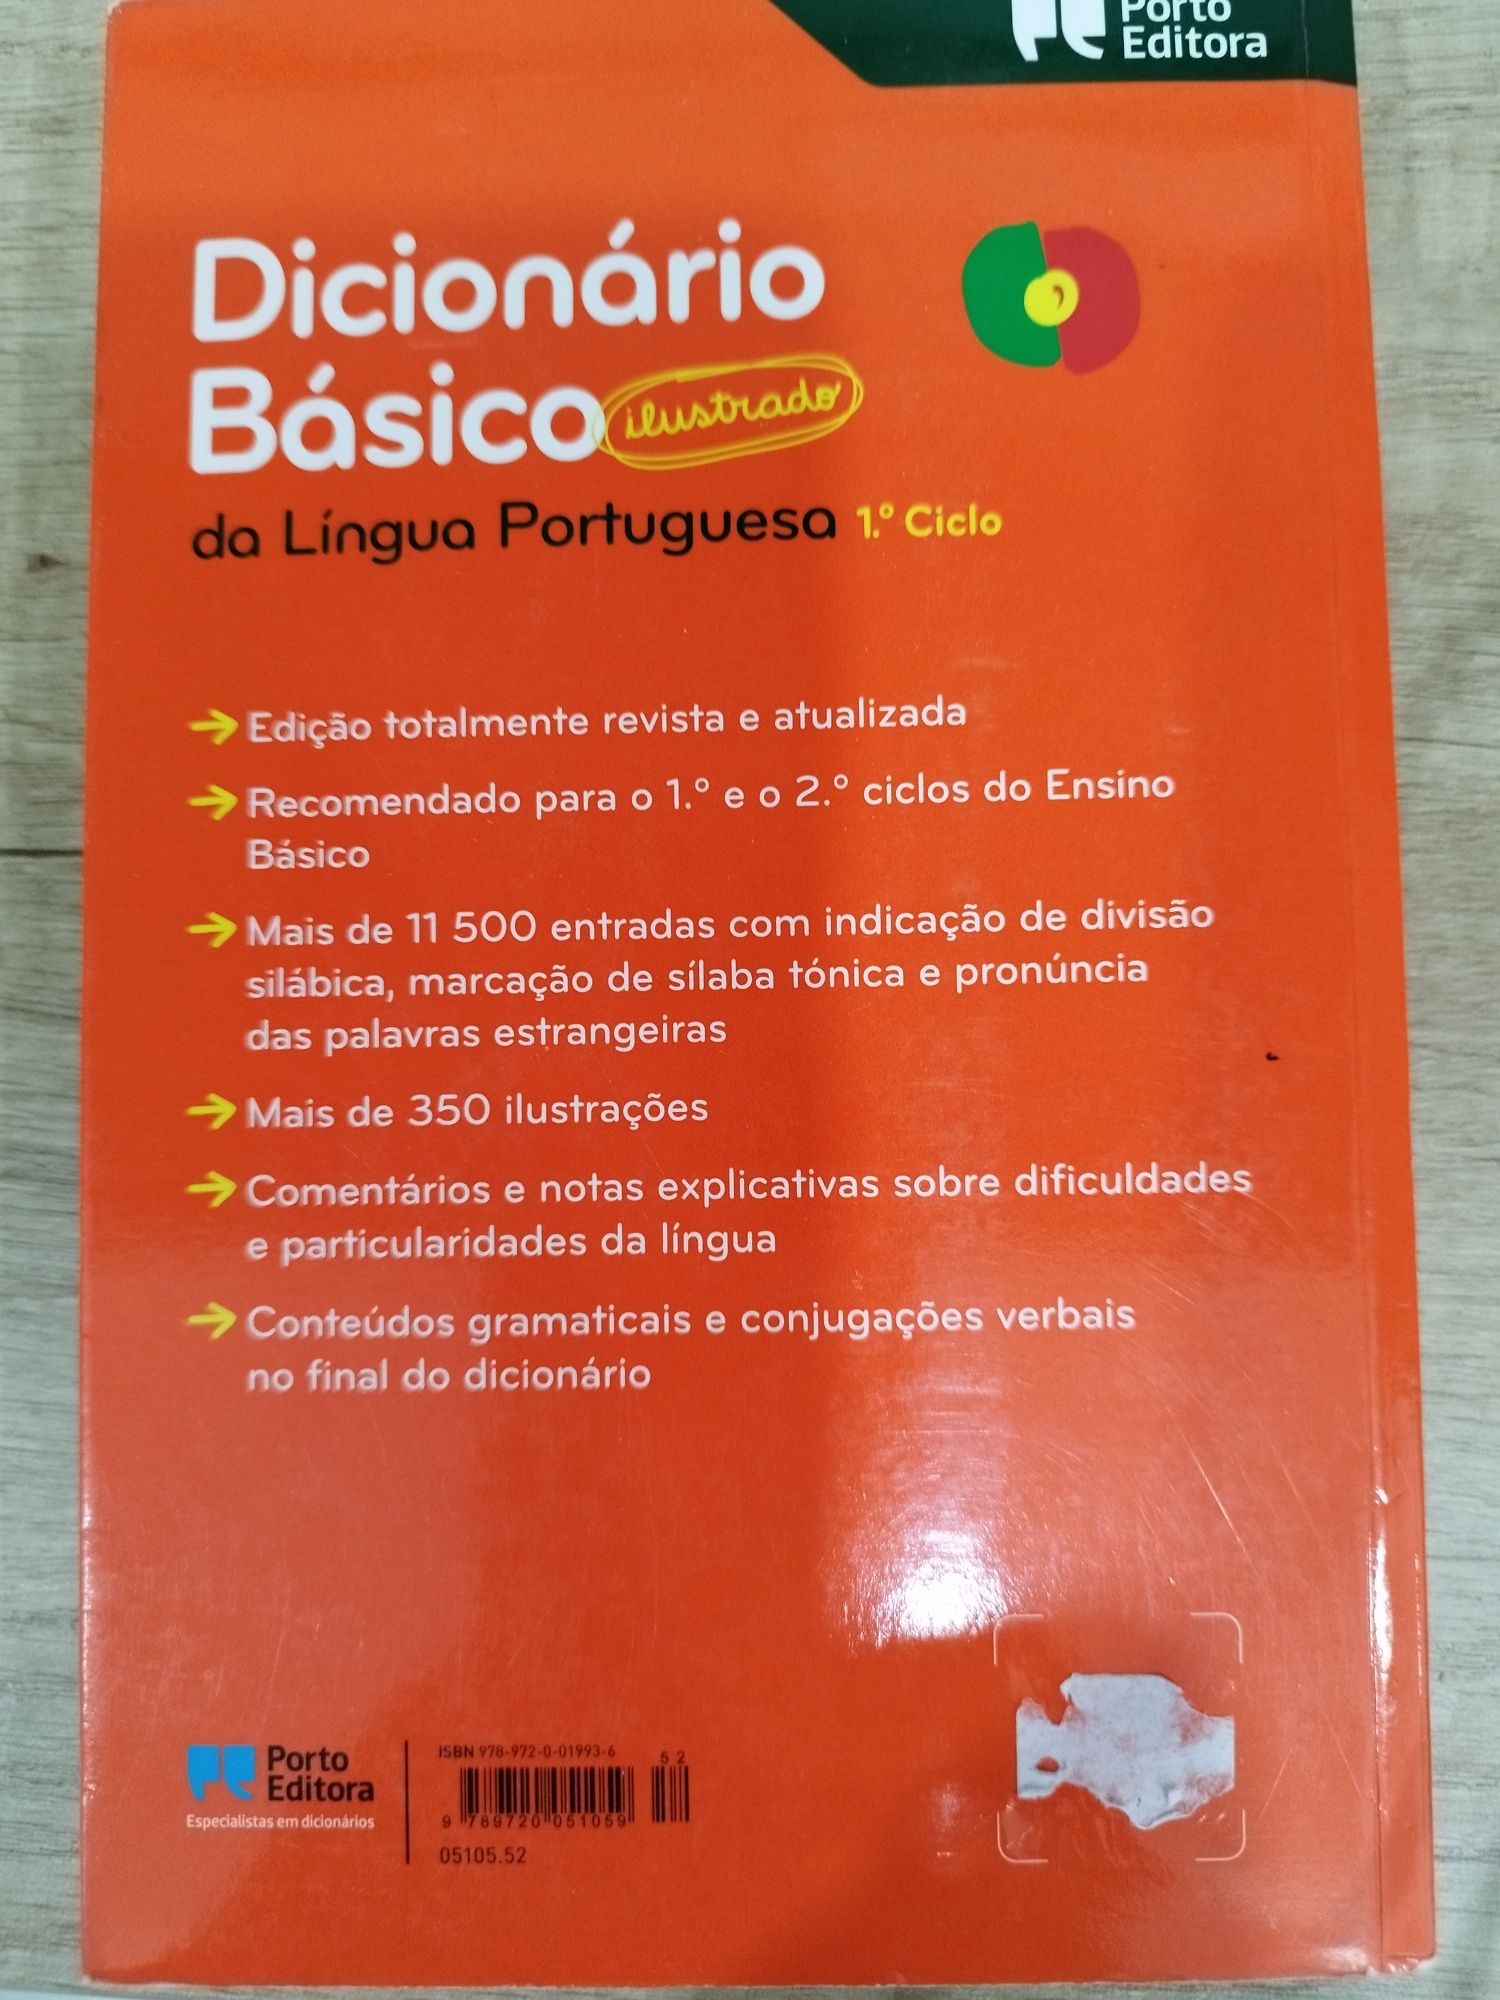 Dicionário Básico ilustrado